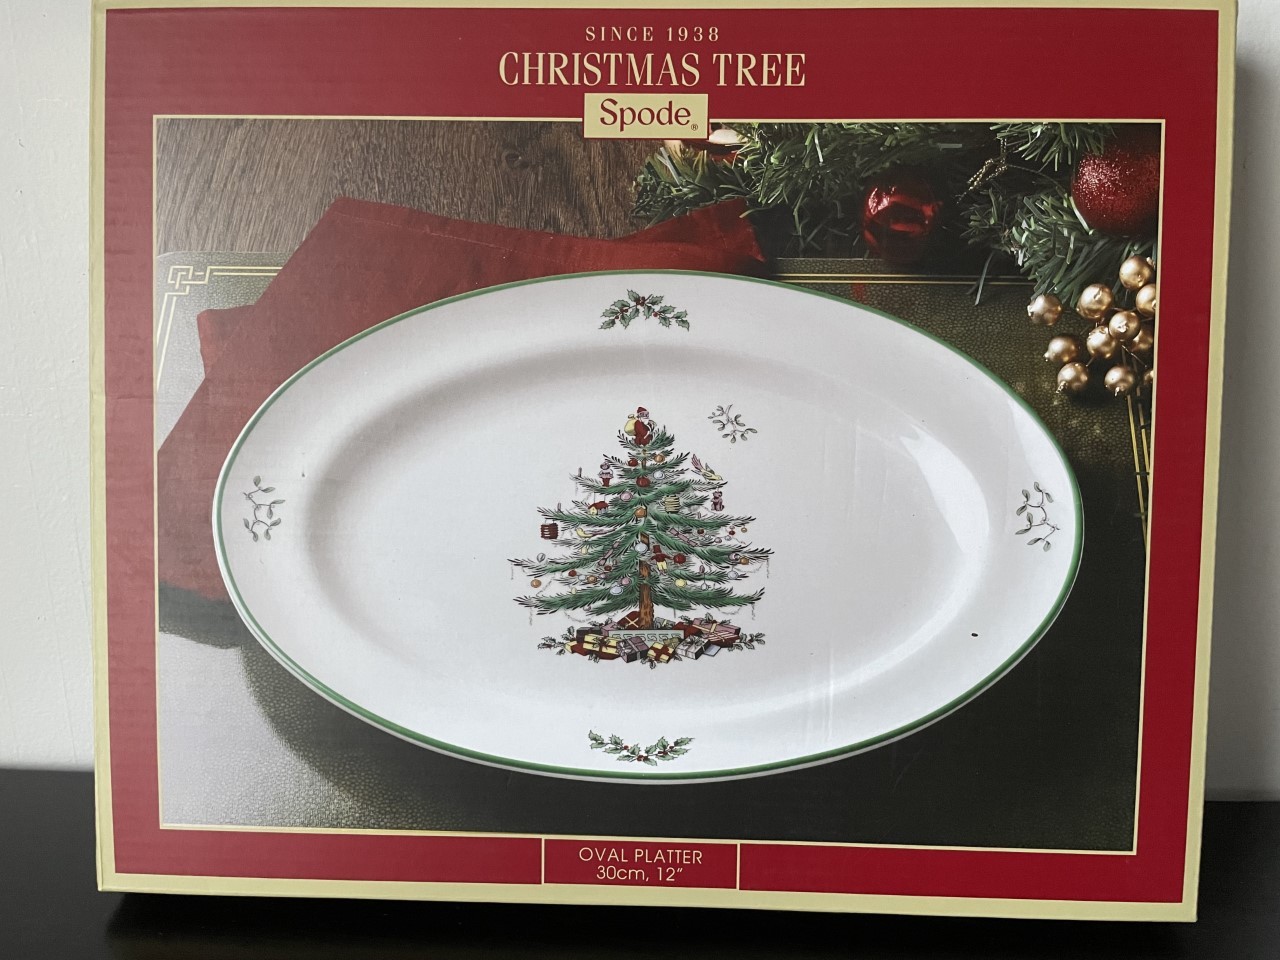 Spode Christmas Tree Oval Platter - $39.95